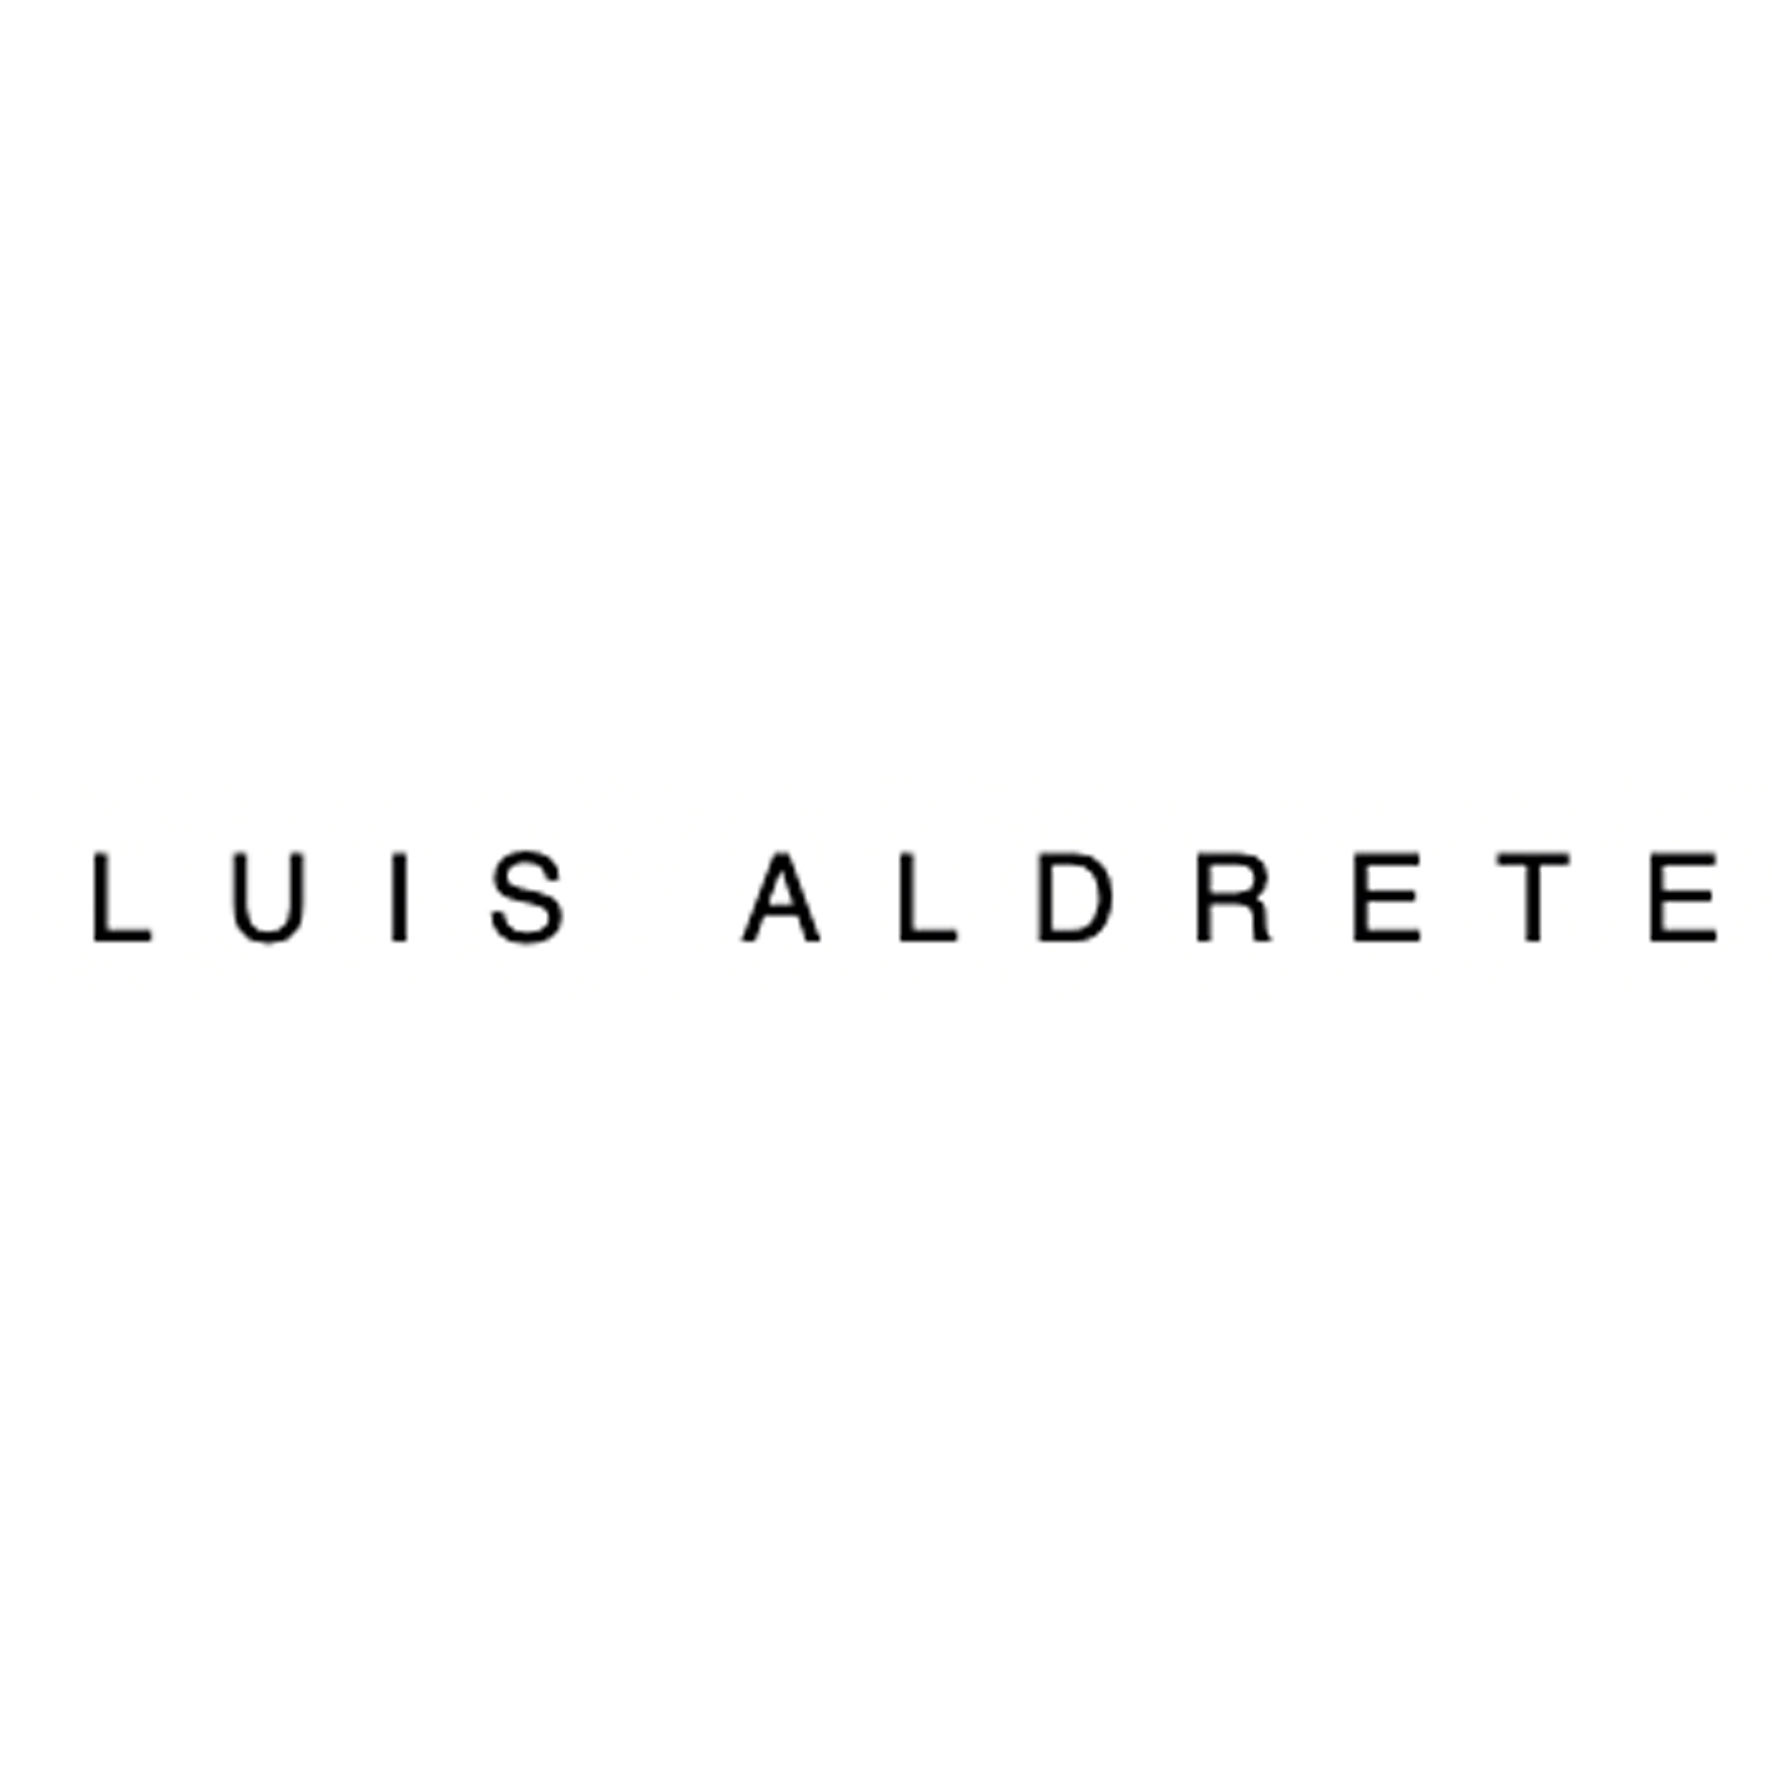 Luis Aldrete